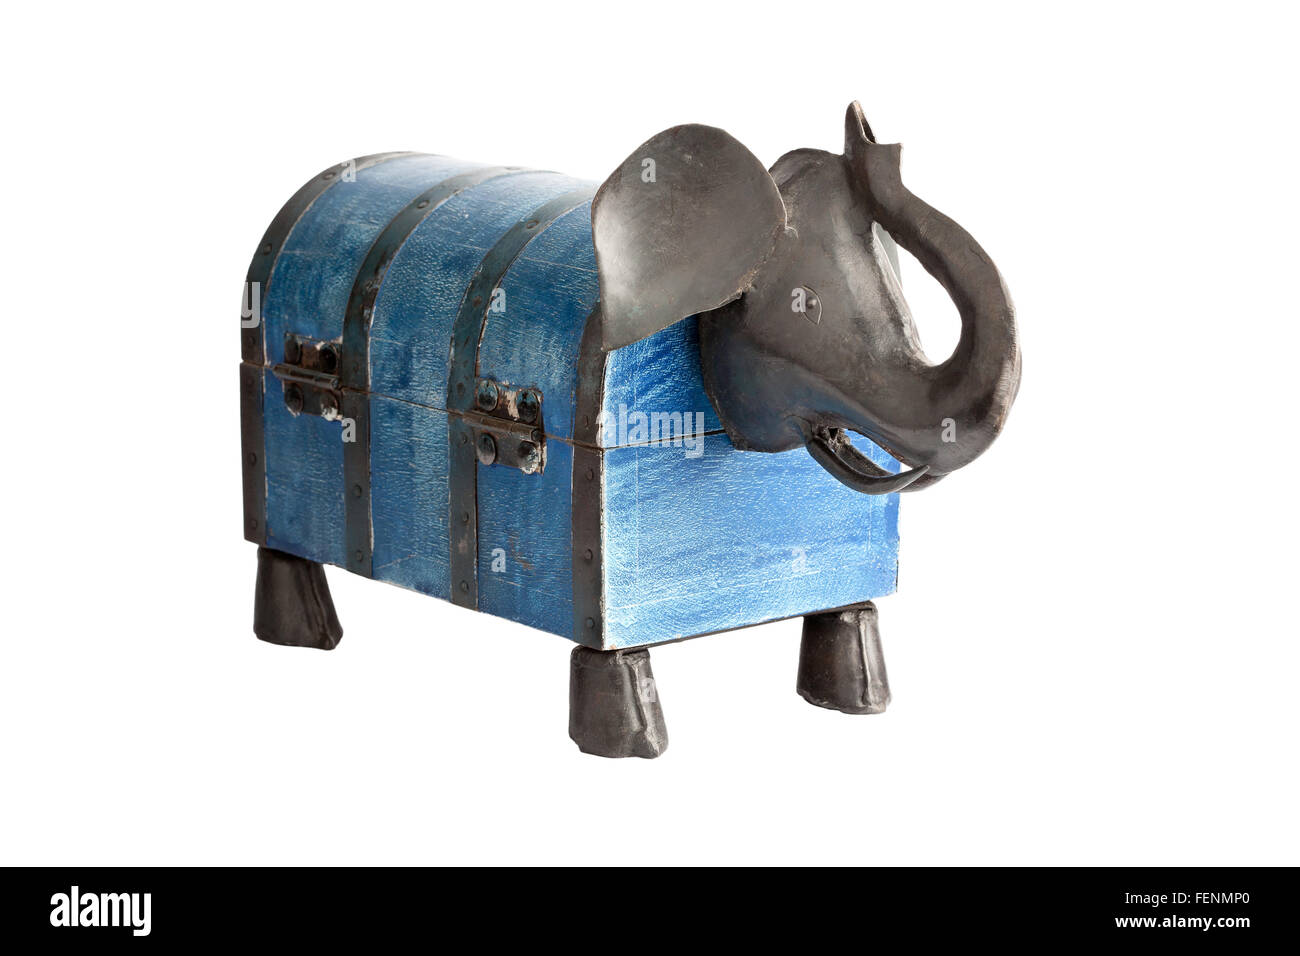 Box shaped like elephant isolated on white Stock Photo